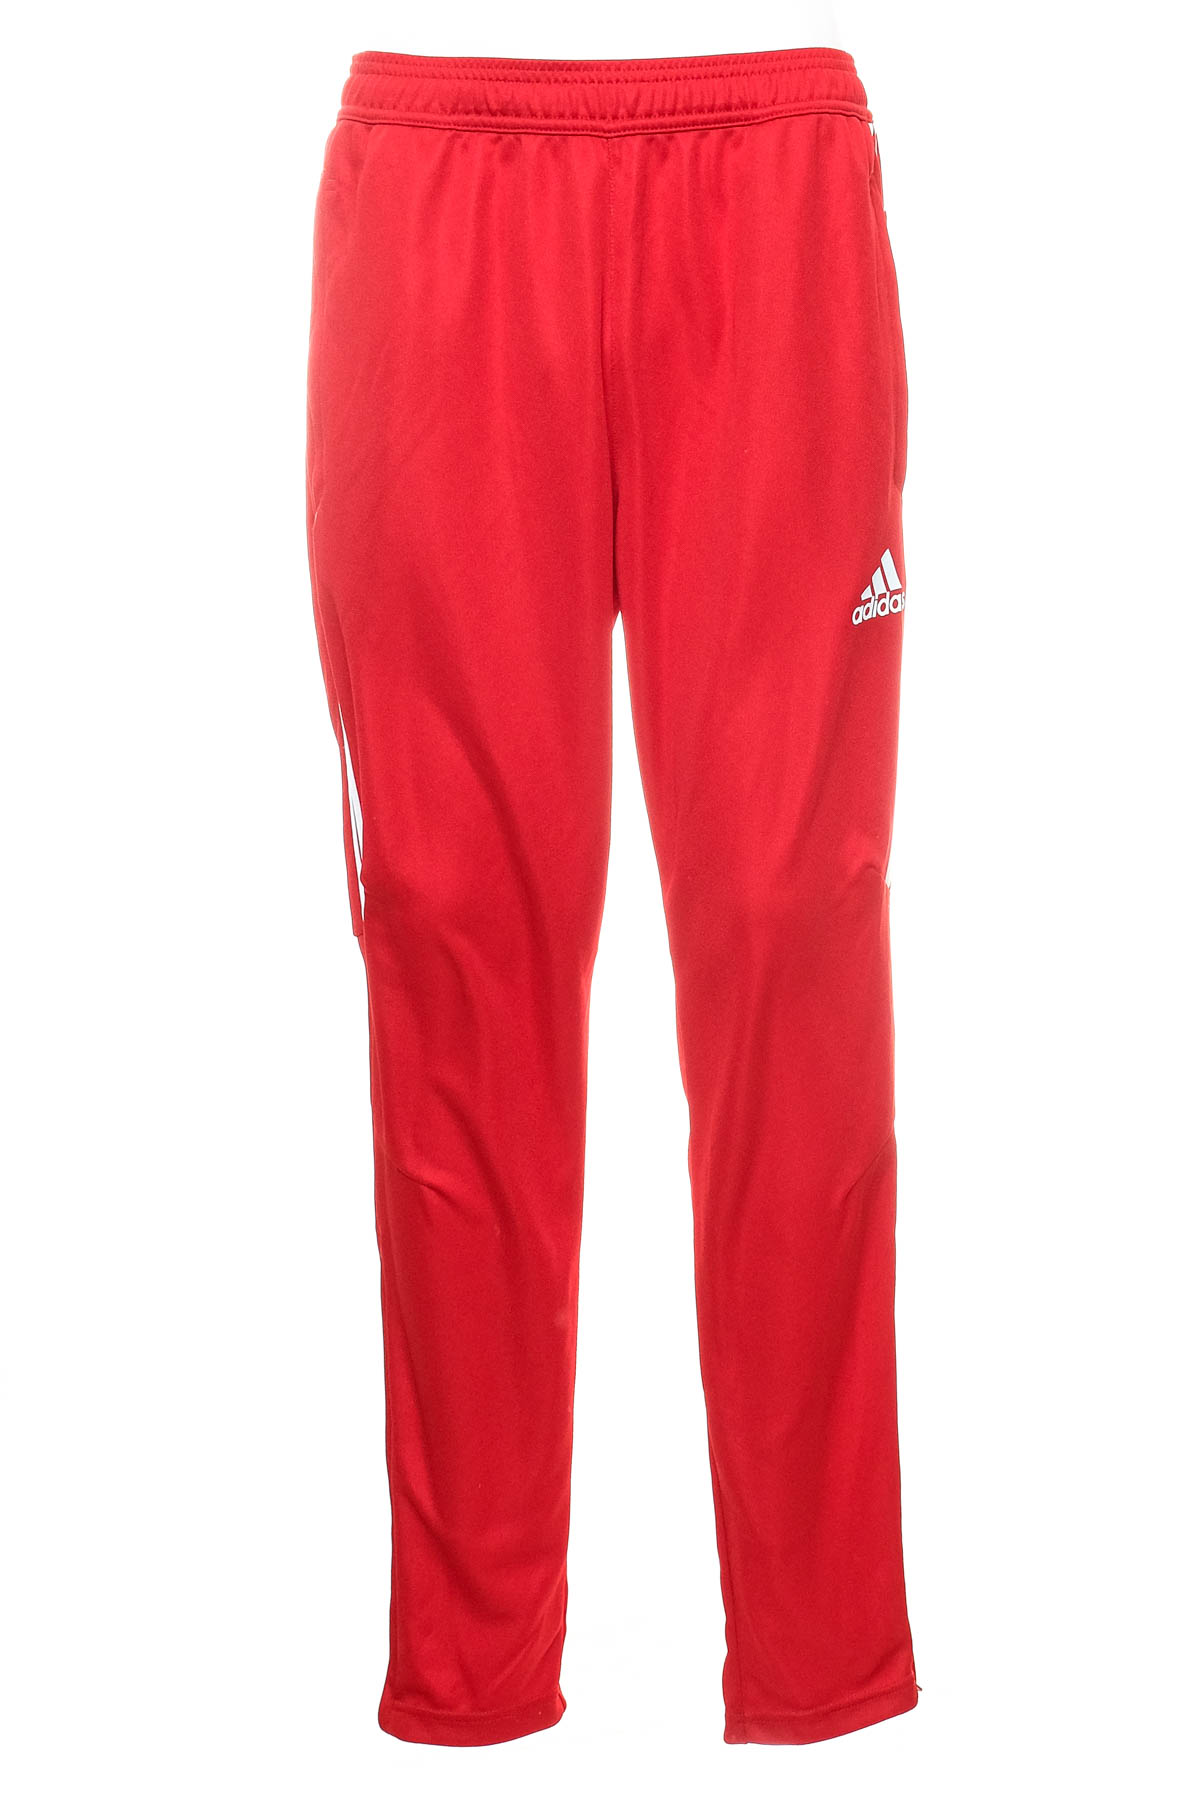 Ανδρικά αθλητικά παντελόνια - Adidas - 0